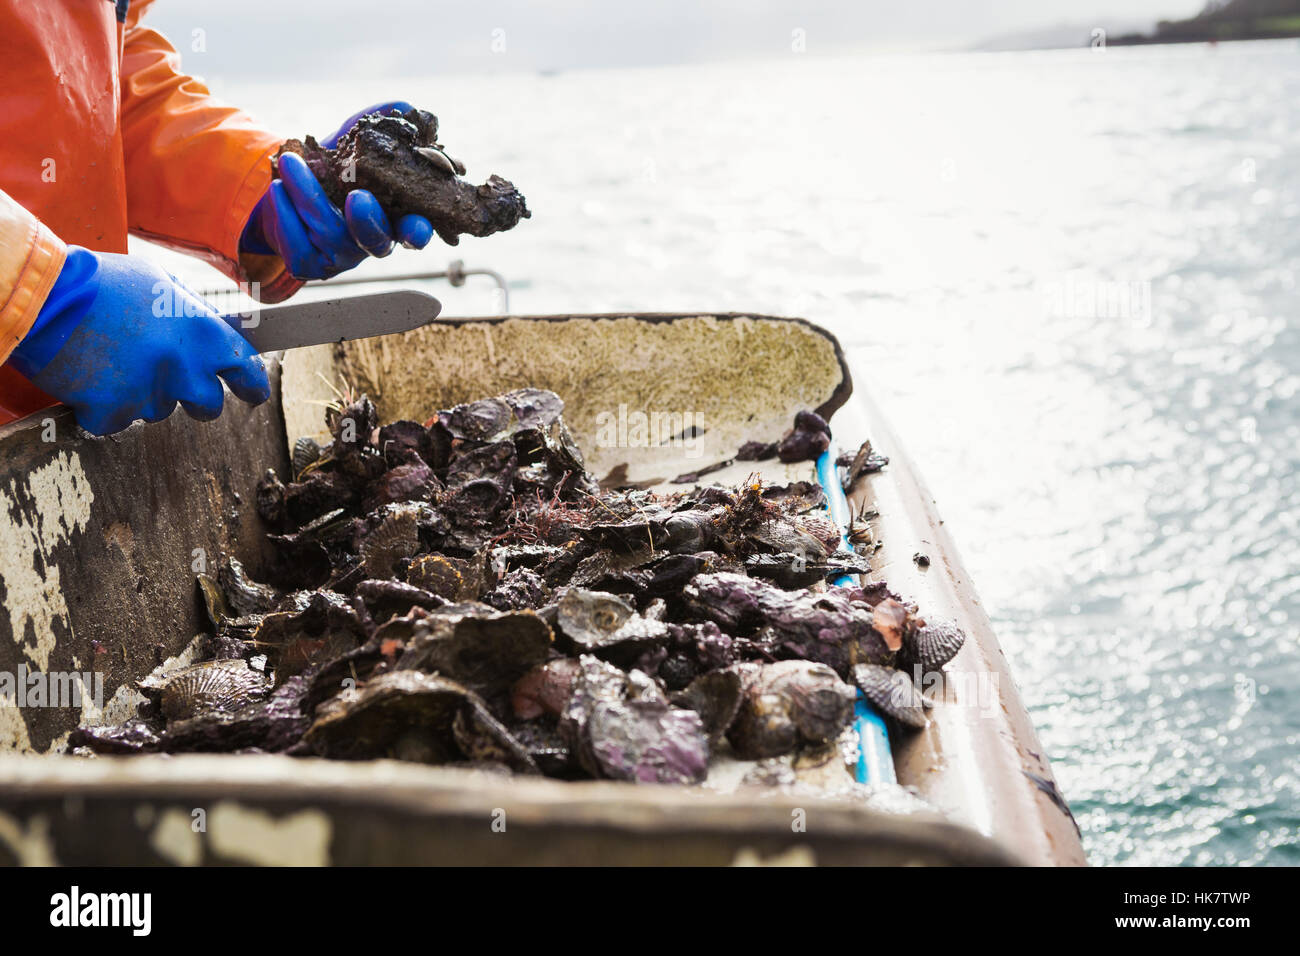 Un pêcheur travaillant sur un pont de bateau, faire le tri des huîtres et autres coquillages. Ostréiculture durable traditionnel de la pêche sur la rivière Fal. Banque D'Images